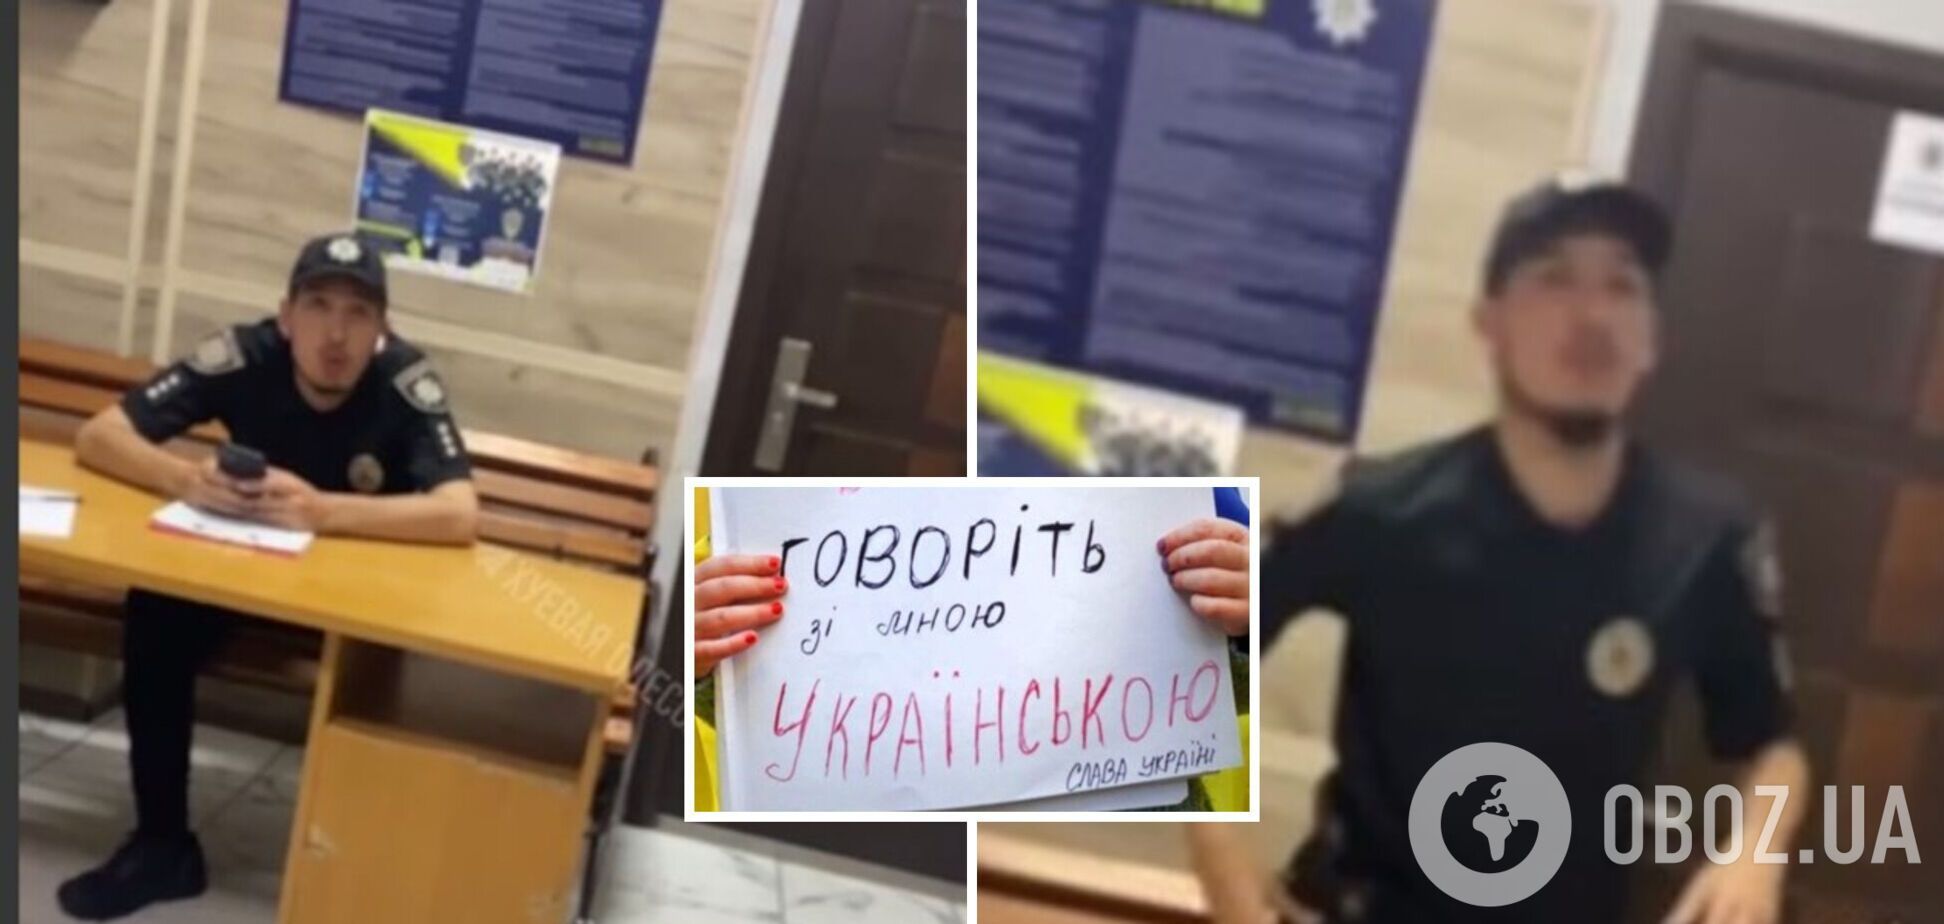 'Понаехали': в Одесской области отстранили полицейских из-за русского языка. Видео